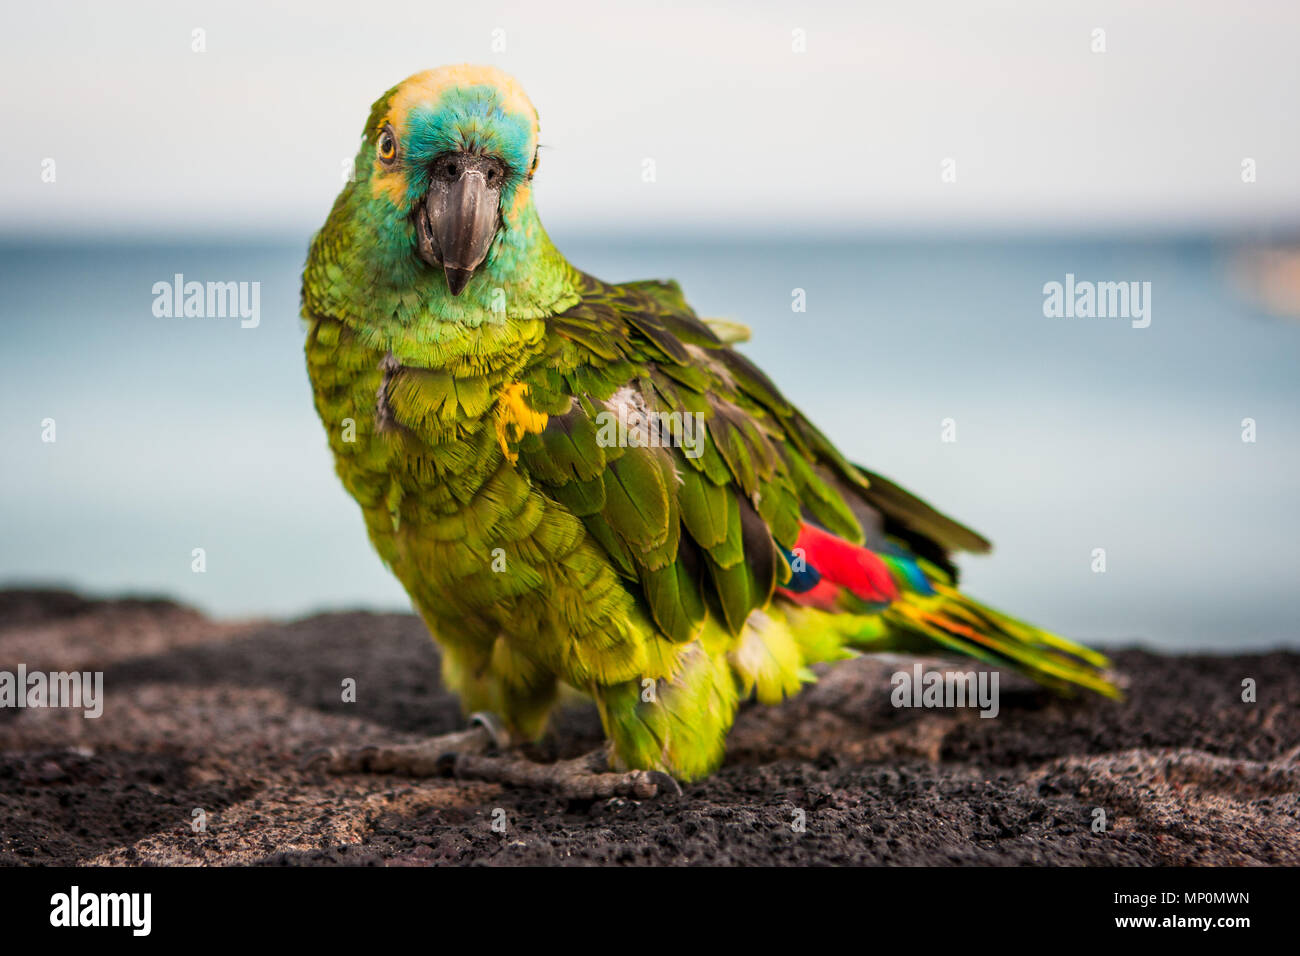 Image détaillée d'un perroquet coloré vert avec des ailes rouges looking at camera. Lanzarote, îles Canaries, Espagne. Banque D'Images